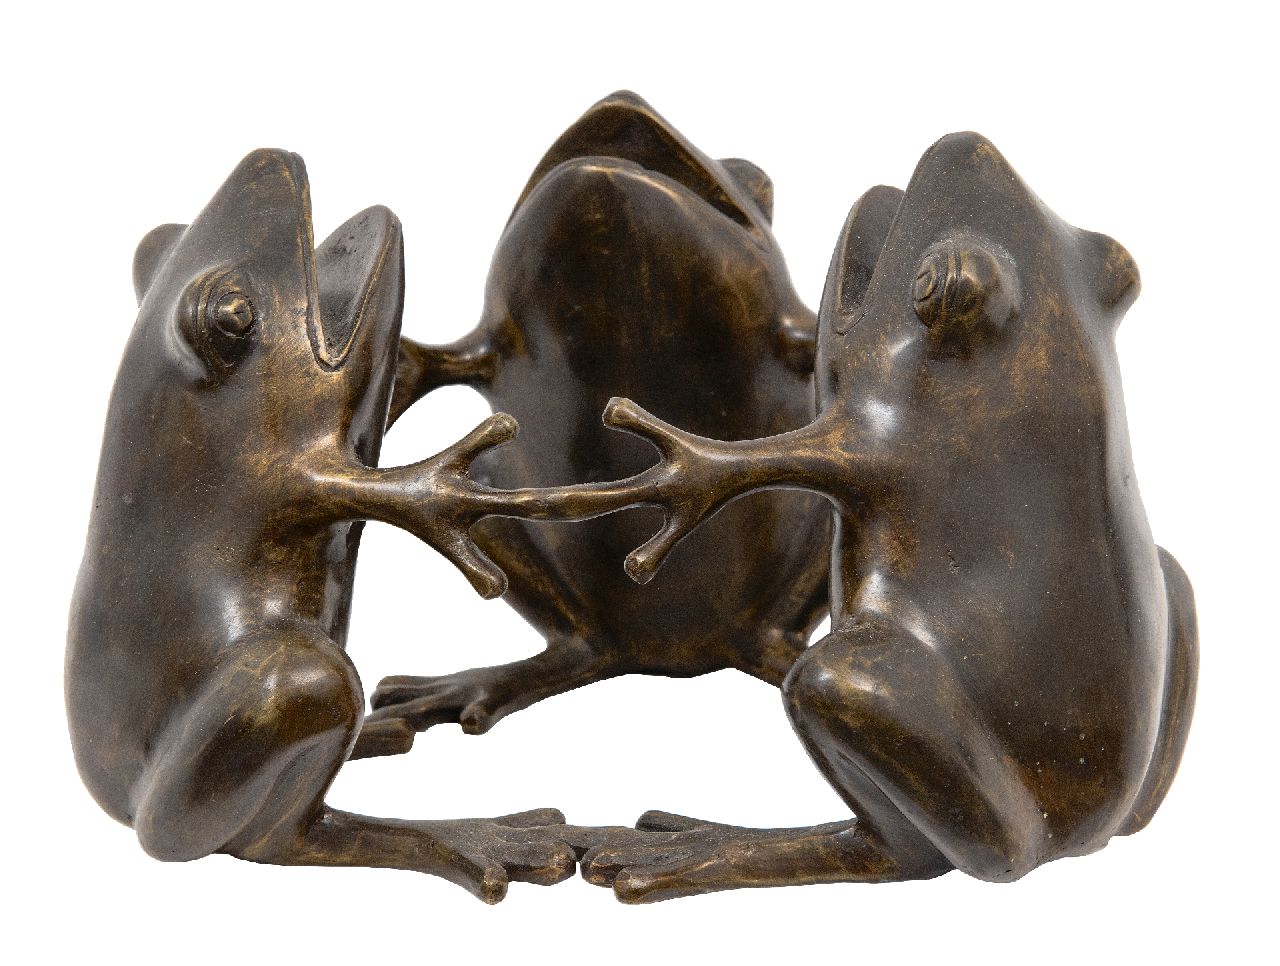 Onbekend 20e eeuw (1e helft)  | Onbekend | Beelden en objecten te koop aangeboden | Drie kikkers, brons 19,5 cm